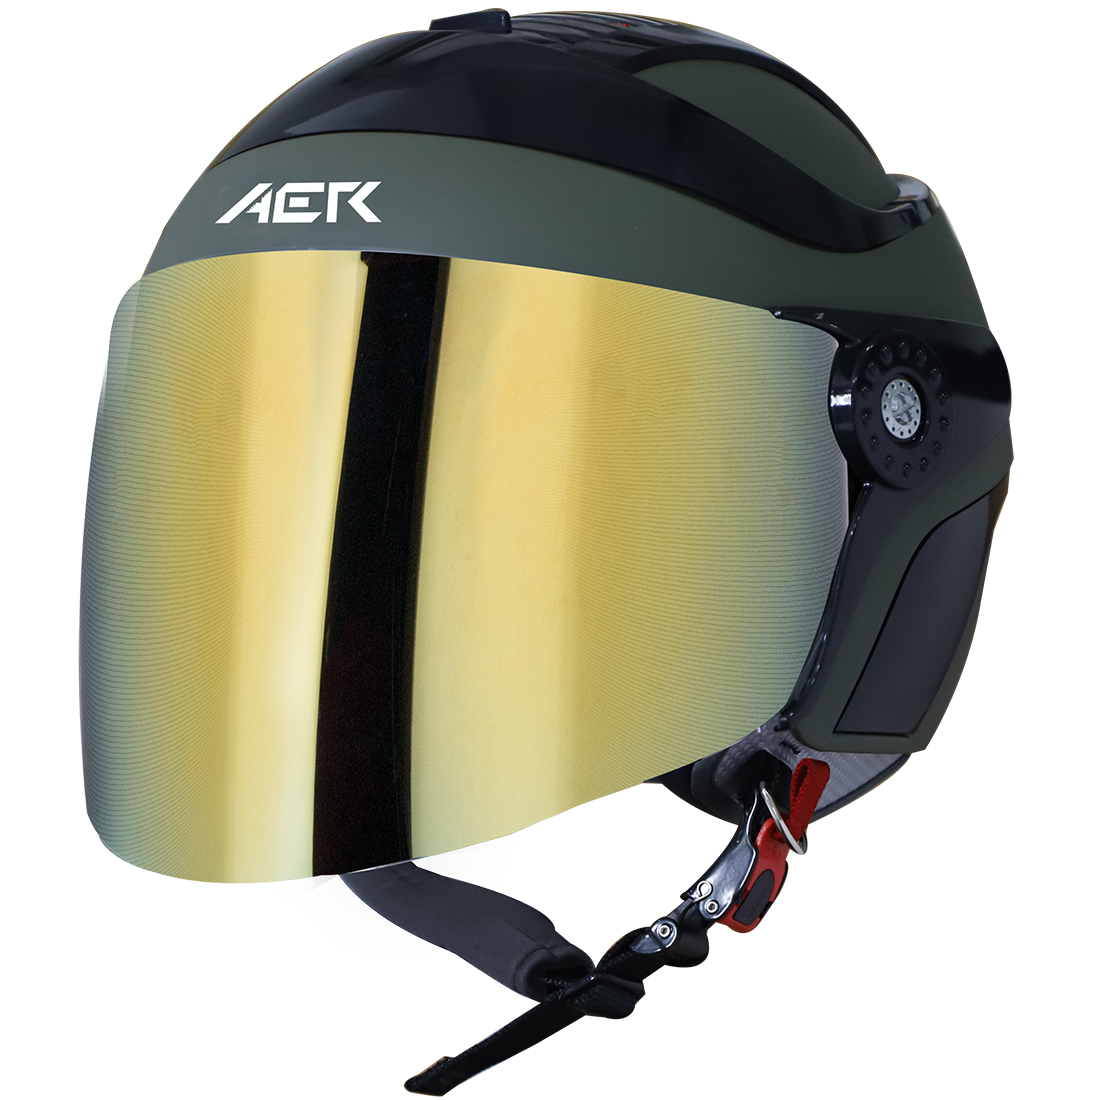 Steelbird SB-29 AER ISI Certified Open Face Helmet For Men And Women (Matt Battle Green Black With Chrome Gold Visor)